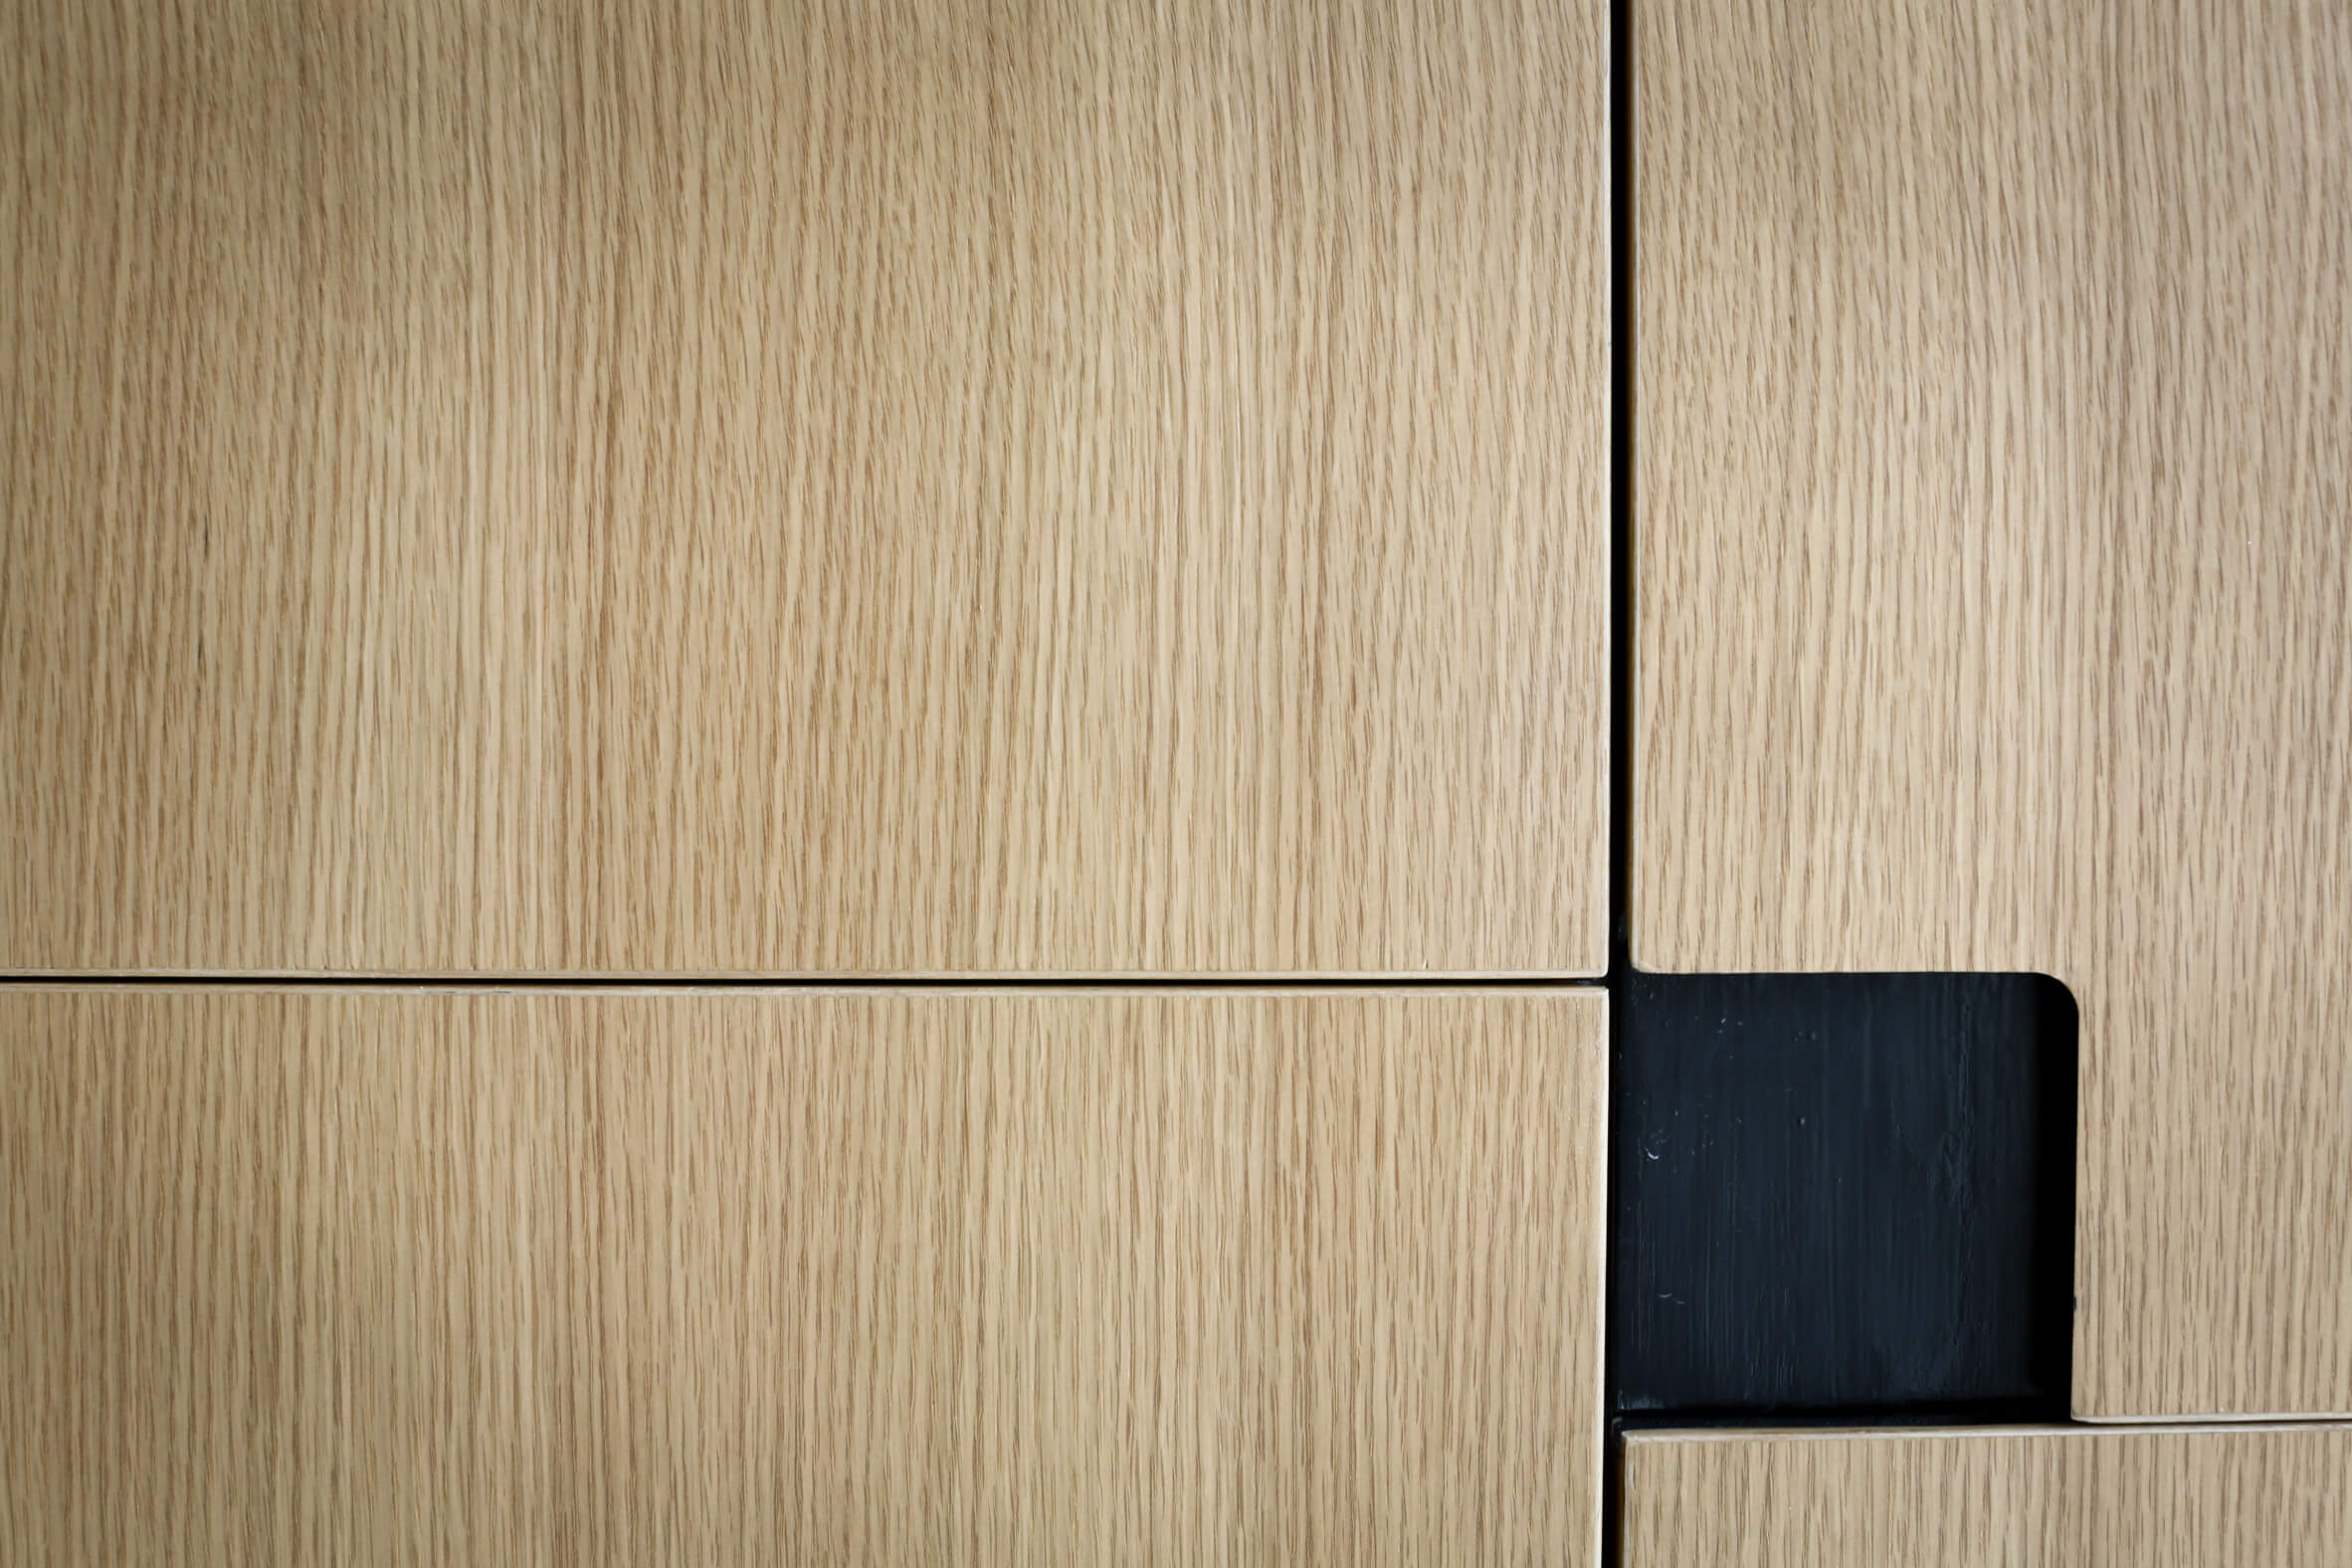 Apartamento de 1950 ganha reforma e ambientes integrados - Detalhe painel de madeira